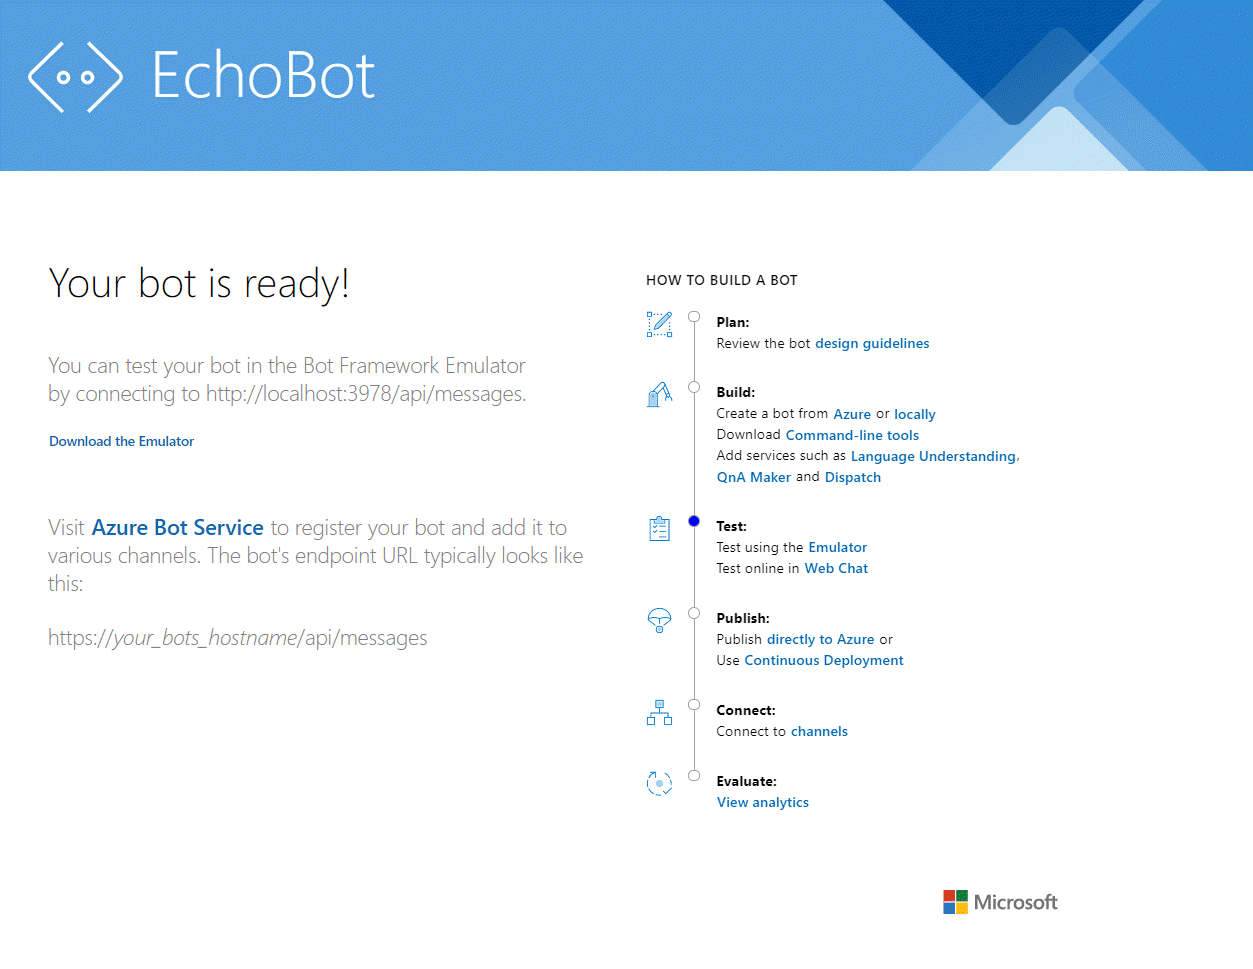 Schermopname van de pagina EchoBot met het bericht dat uw bot gereed is.